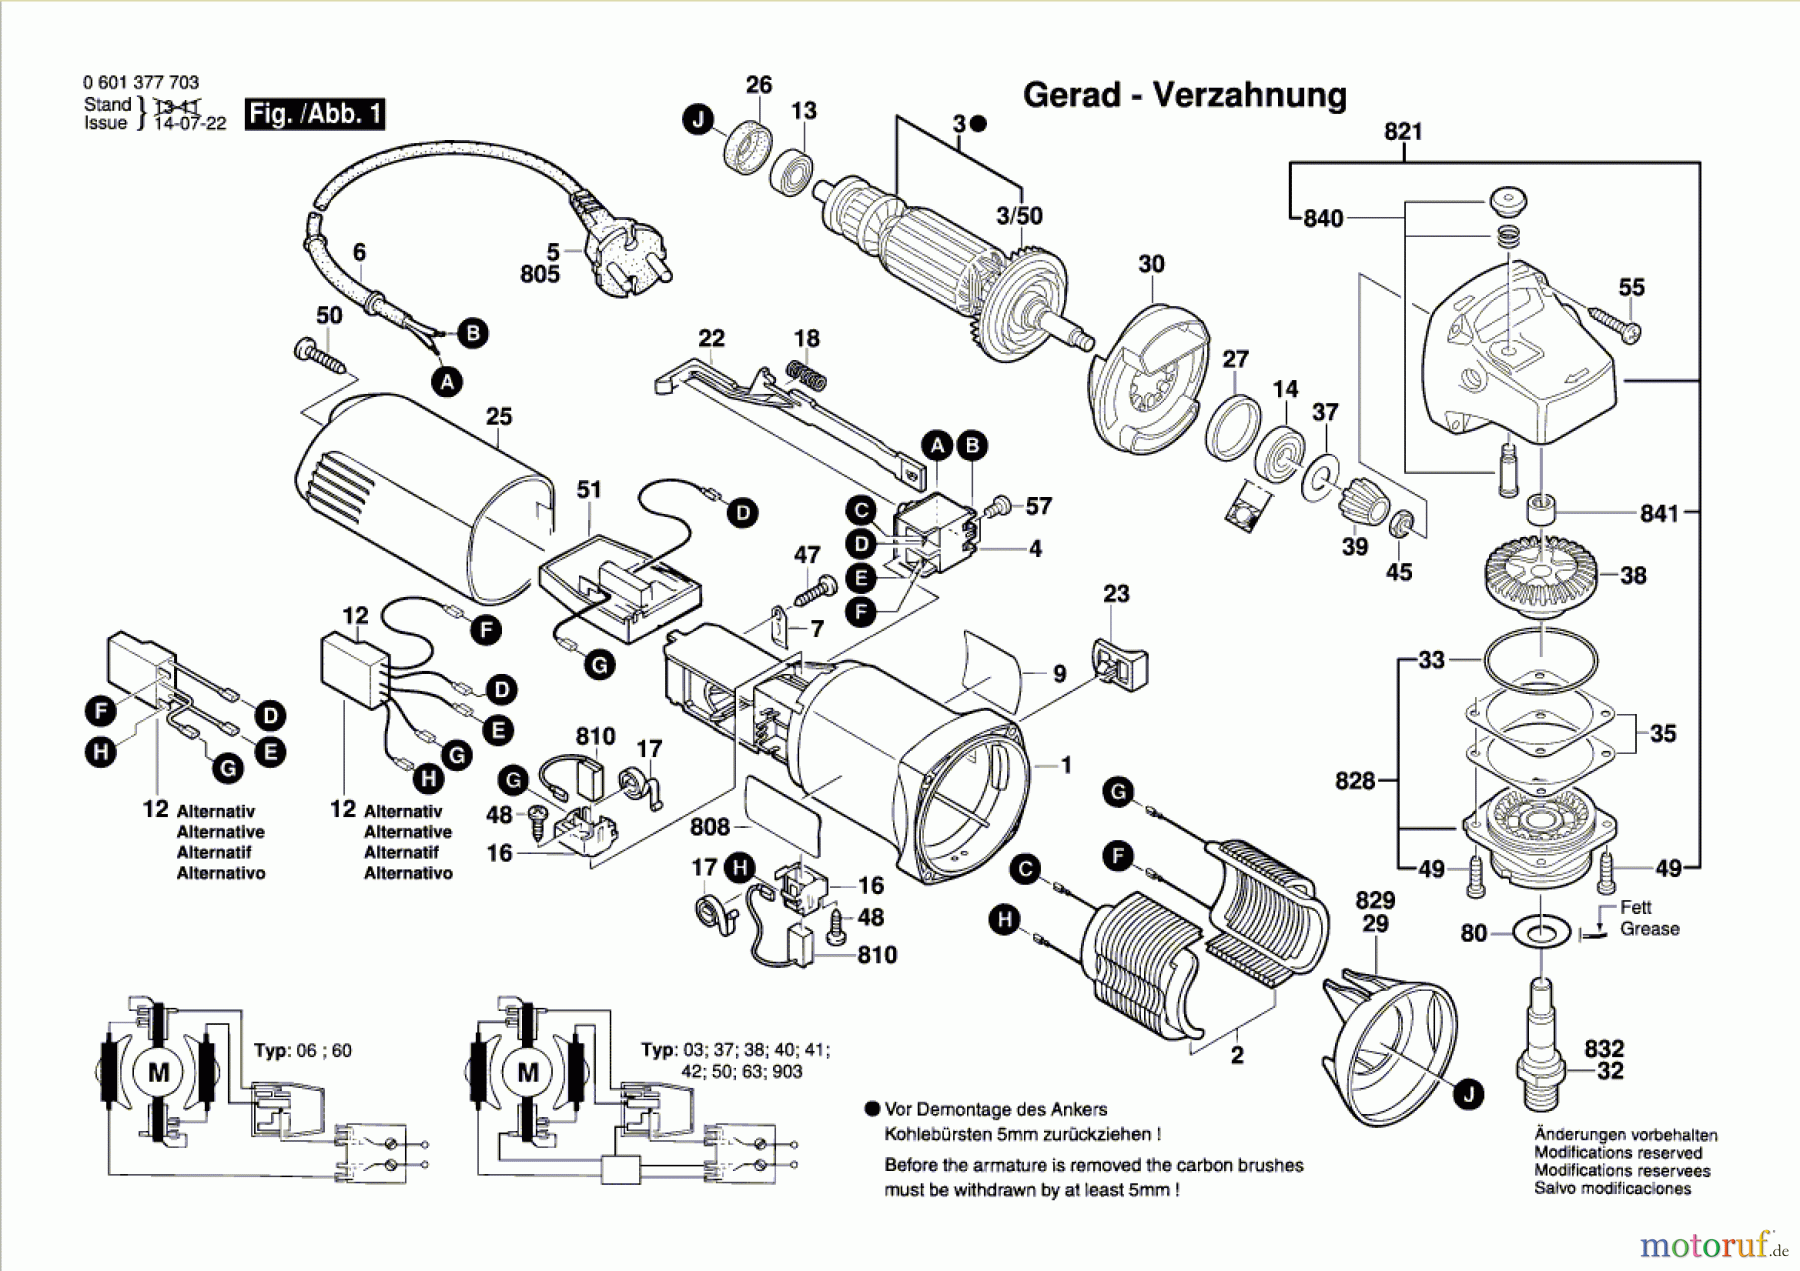  Bosch Werkzeug Winkelschleifer GWS 8-125 CE Seite 1